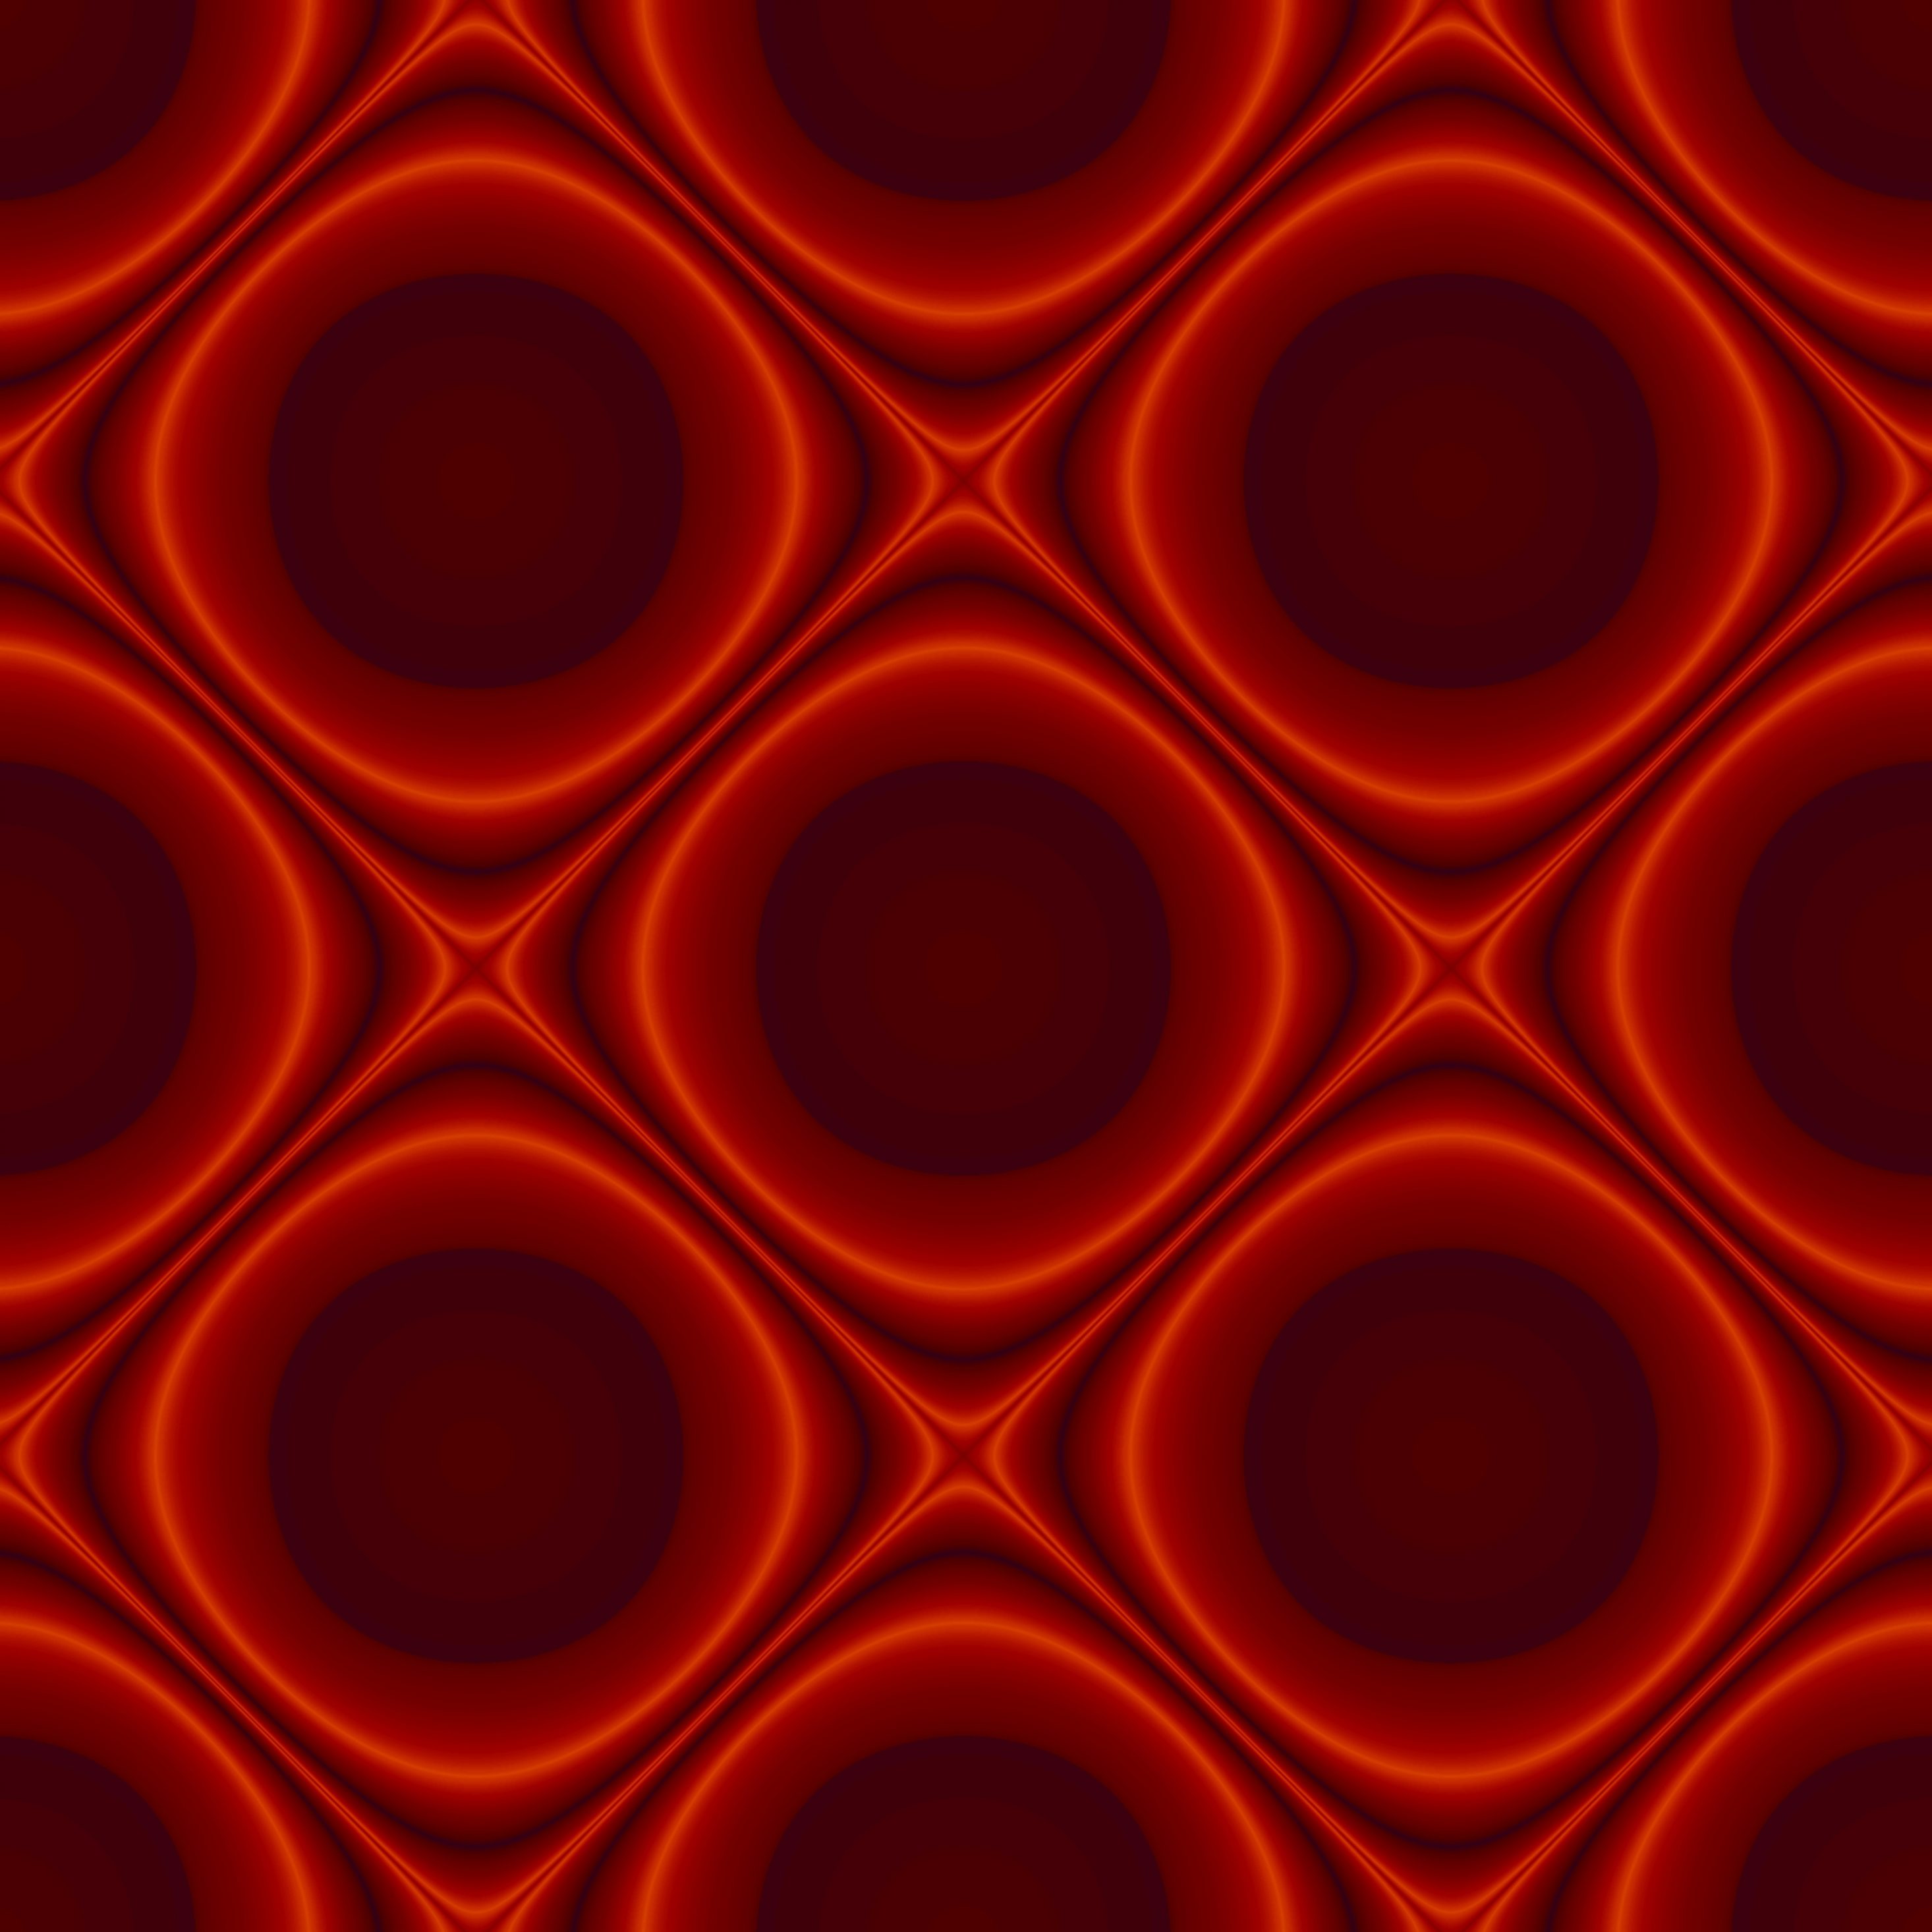 2932x2932 iPad Pro wallpaper 4k Abstract Pattern Design Red Ipad Wallpaper 2932x2932 pixels resolution